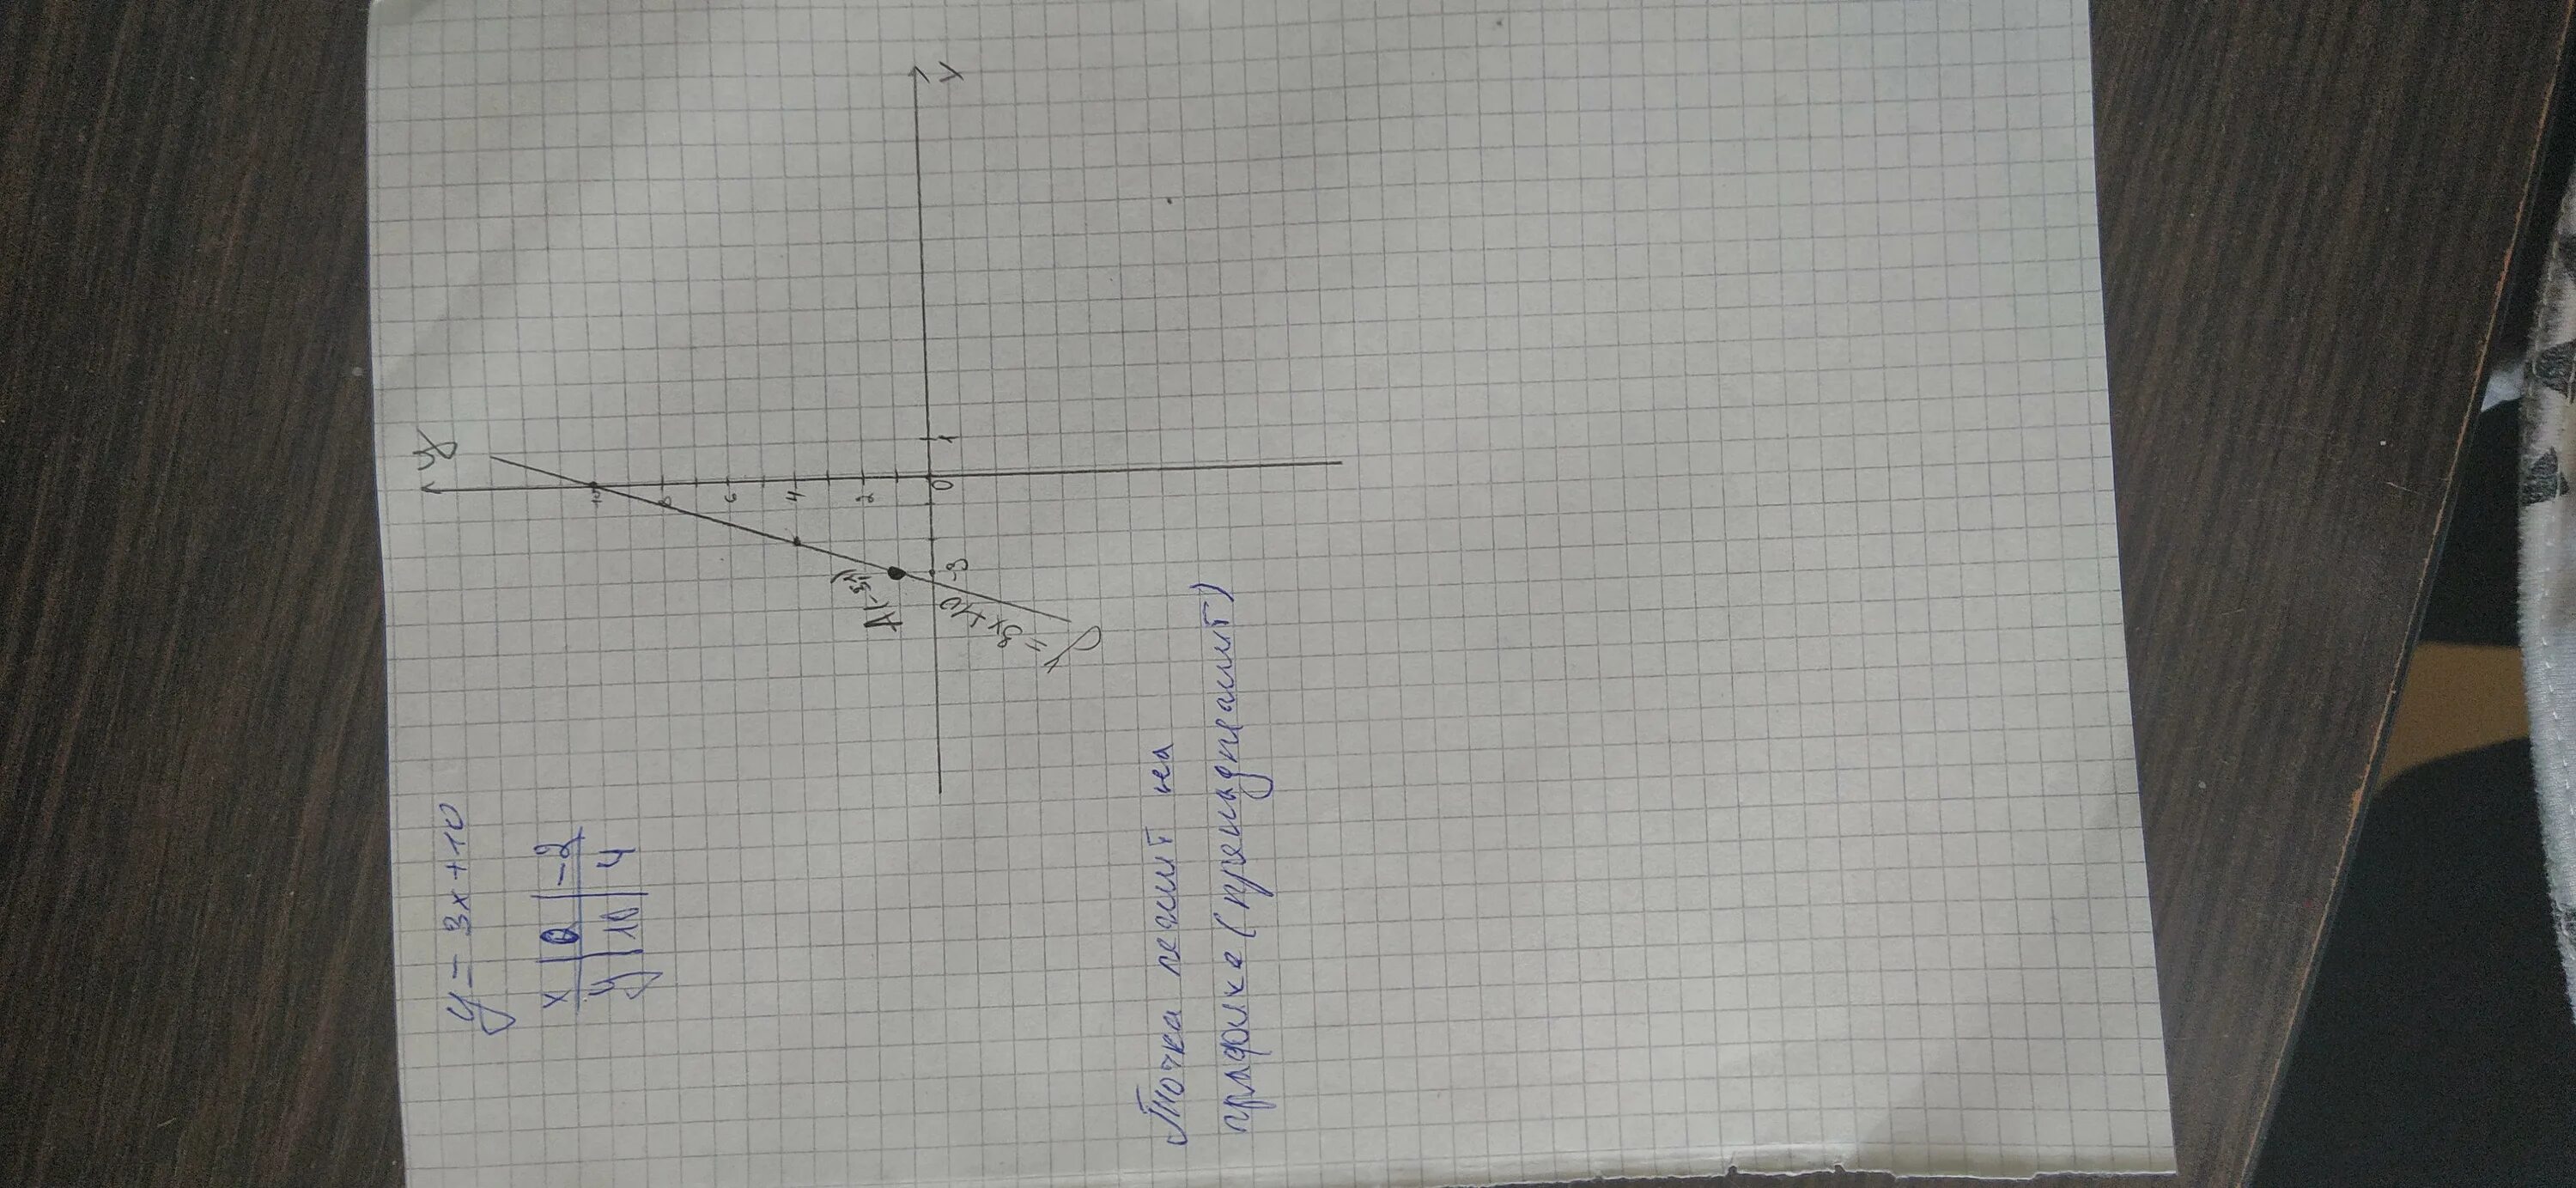 Функция задана формулой y=3x+10 где лежит точка а(-3;1). Функция задана формулой y=3х-22 где лежит точка а 7 0. Выше ниже или принадлежит графику точка -3 1. Пример черчения графиков собирающей линзы.